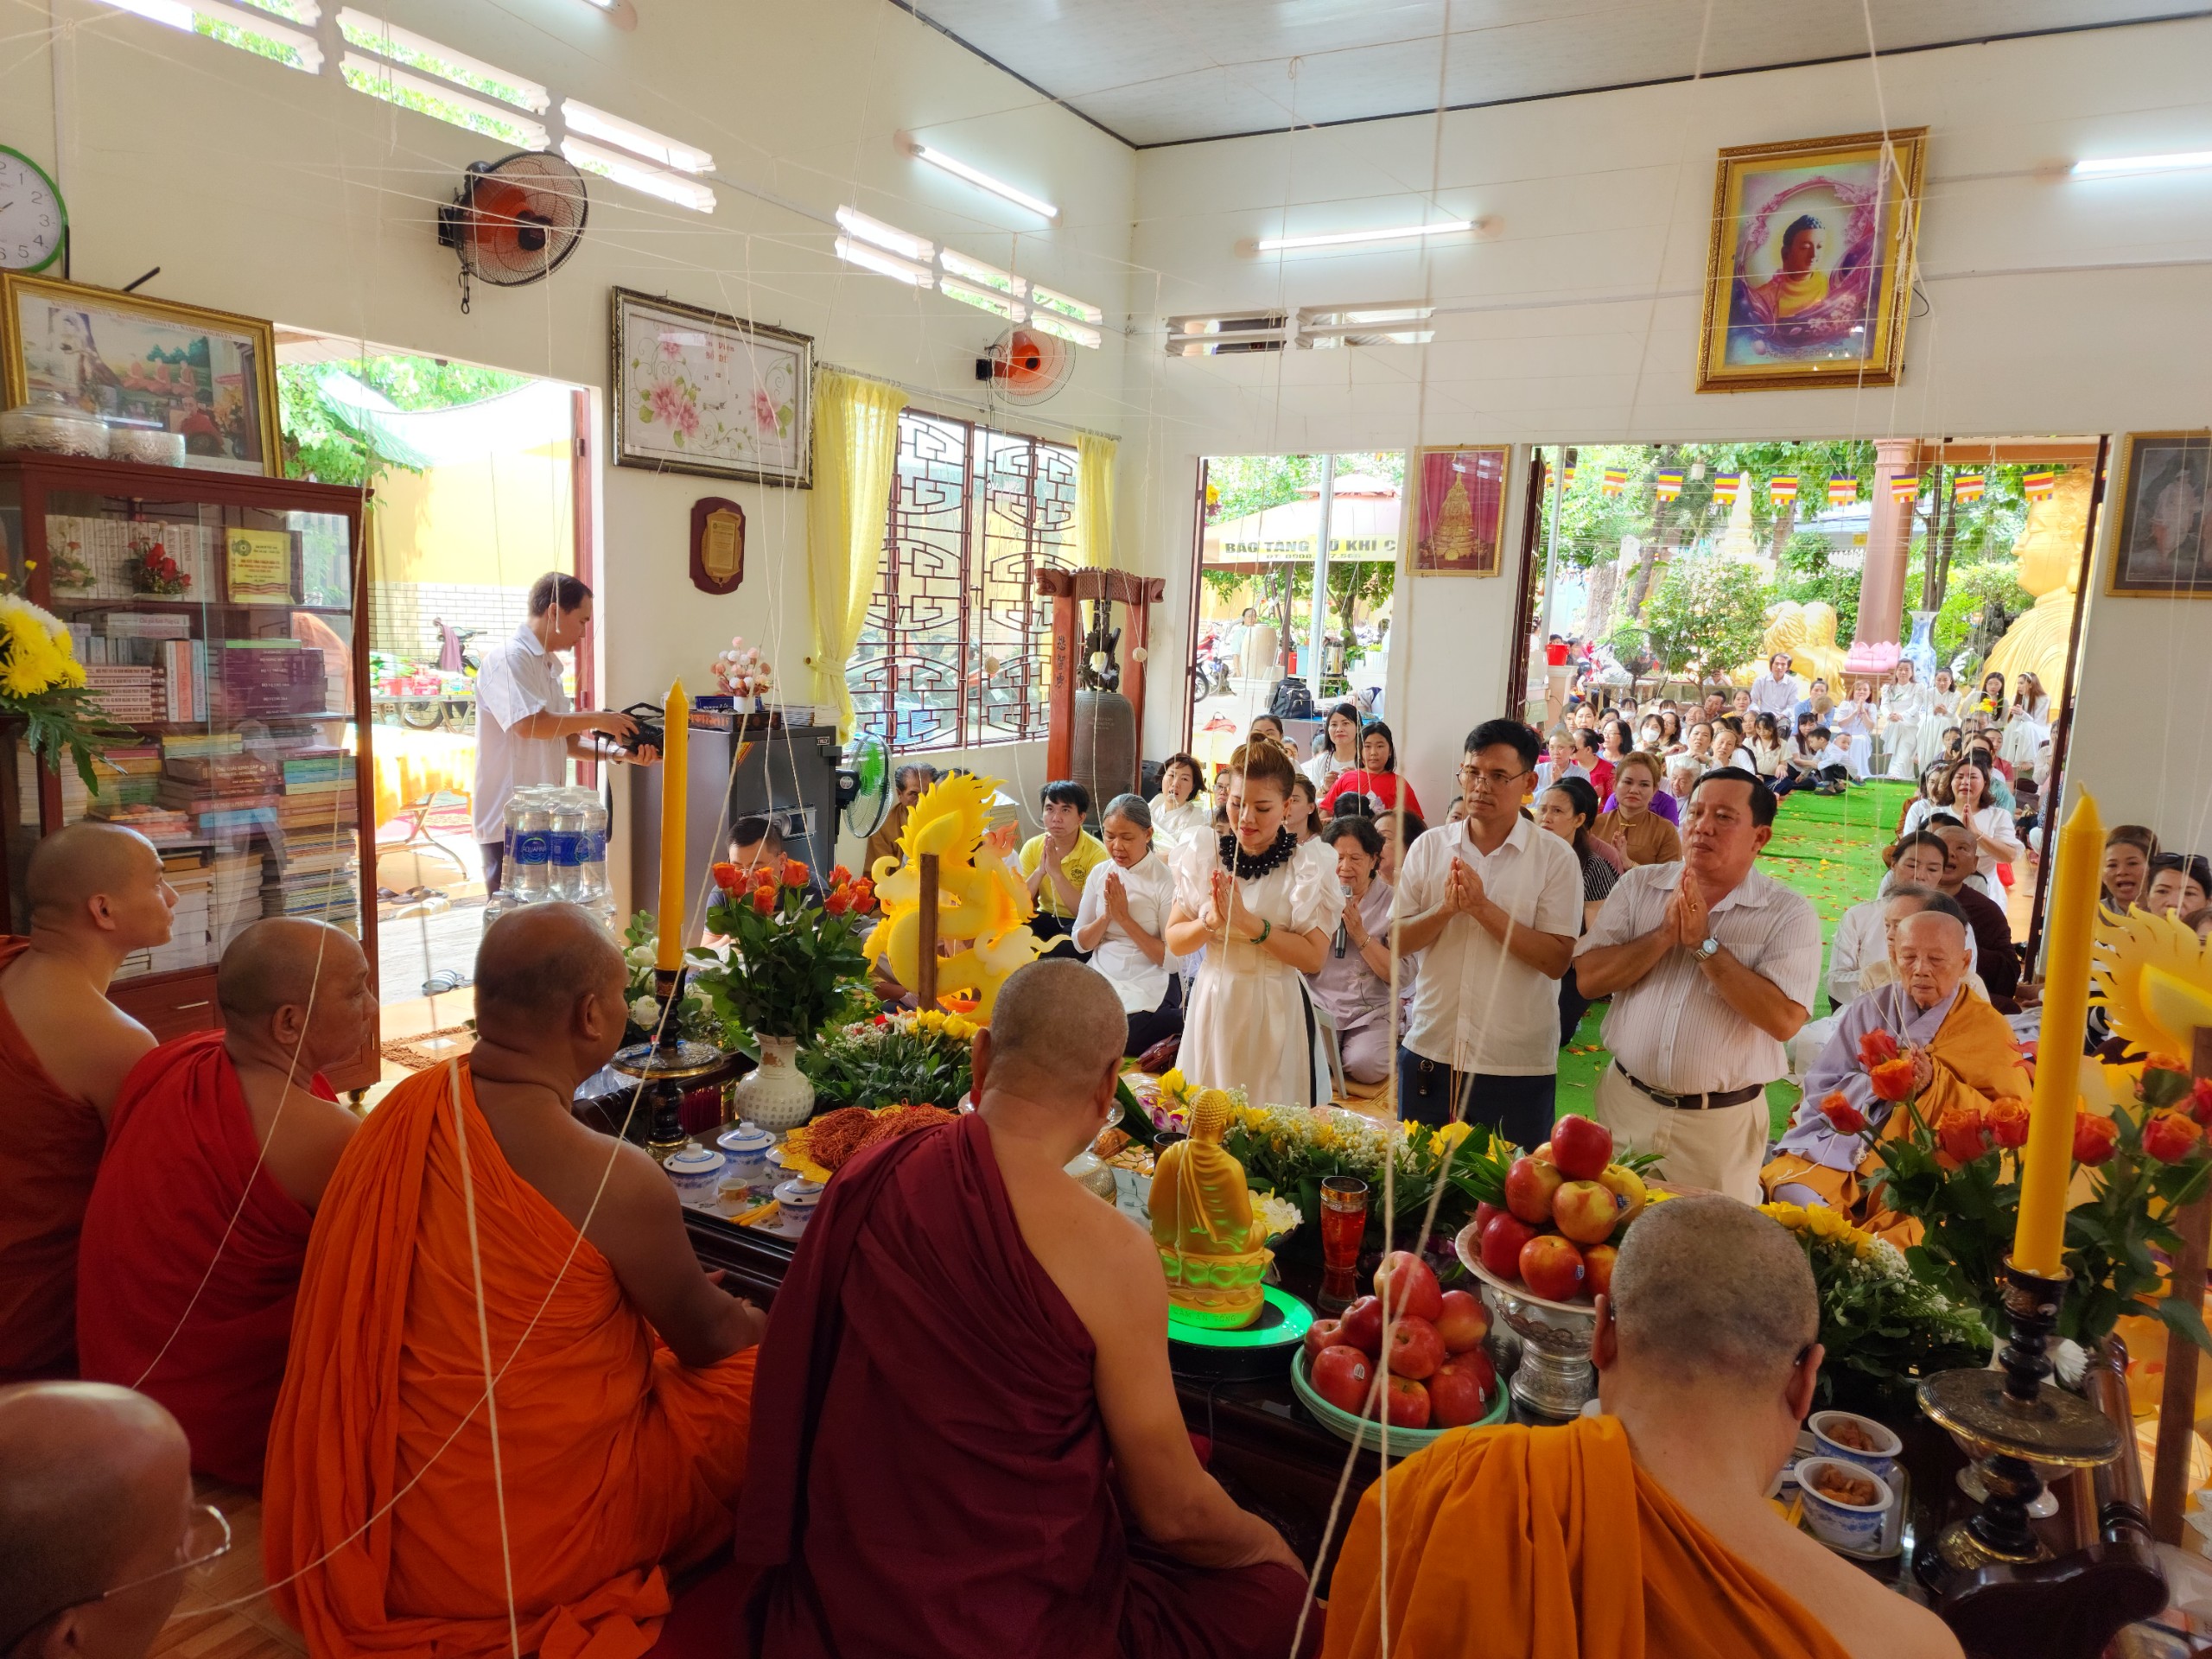 BR-VT: Lễ an vị tượng Phật ngọc tại Thiền viện Bồ Đề - z4719548867935_de379744771873976ef75070ddb8d8f5.jpg (1126915 KB)